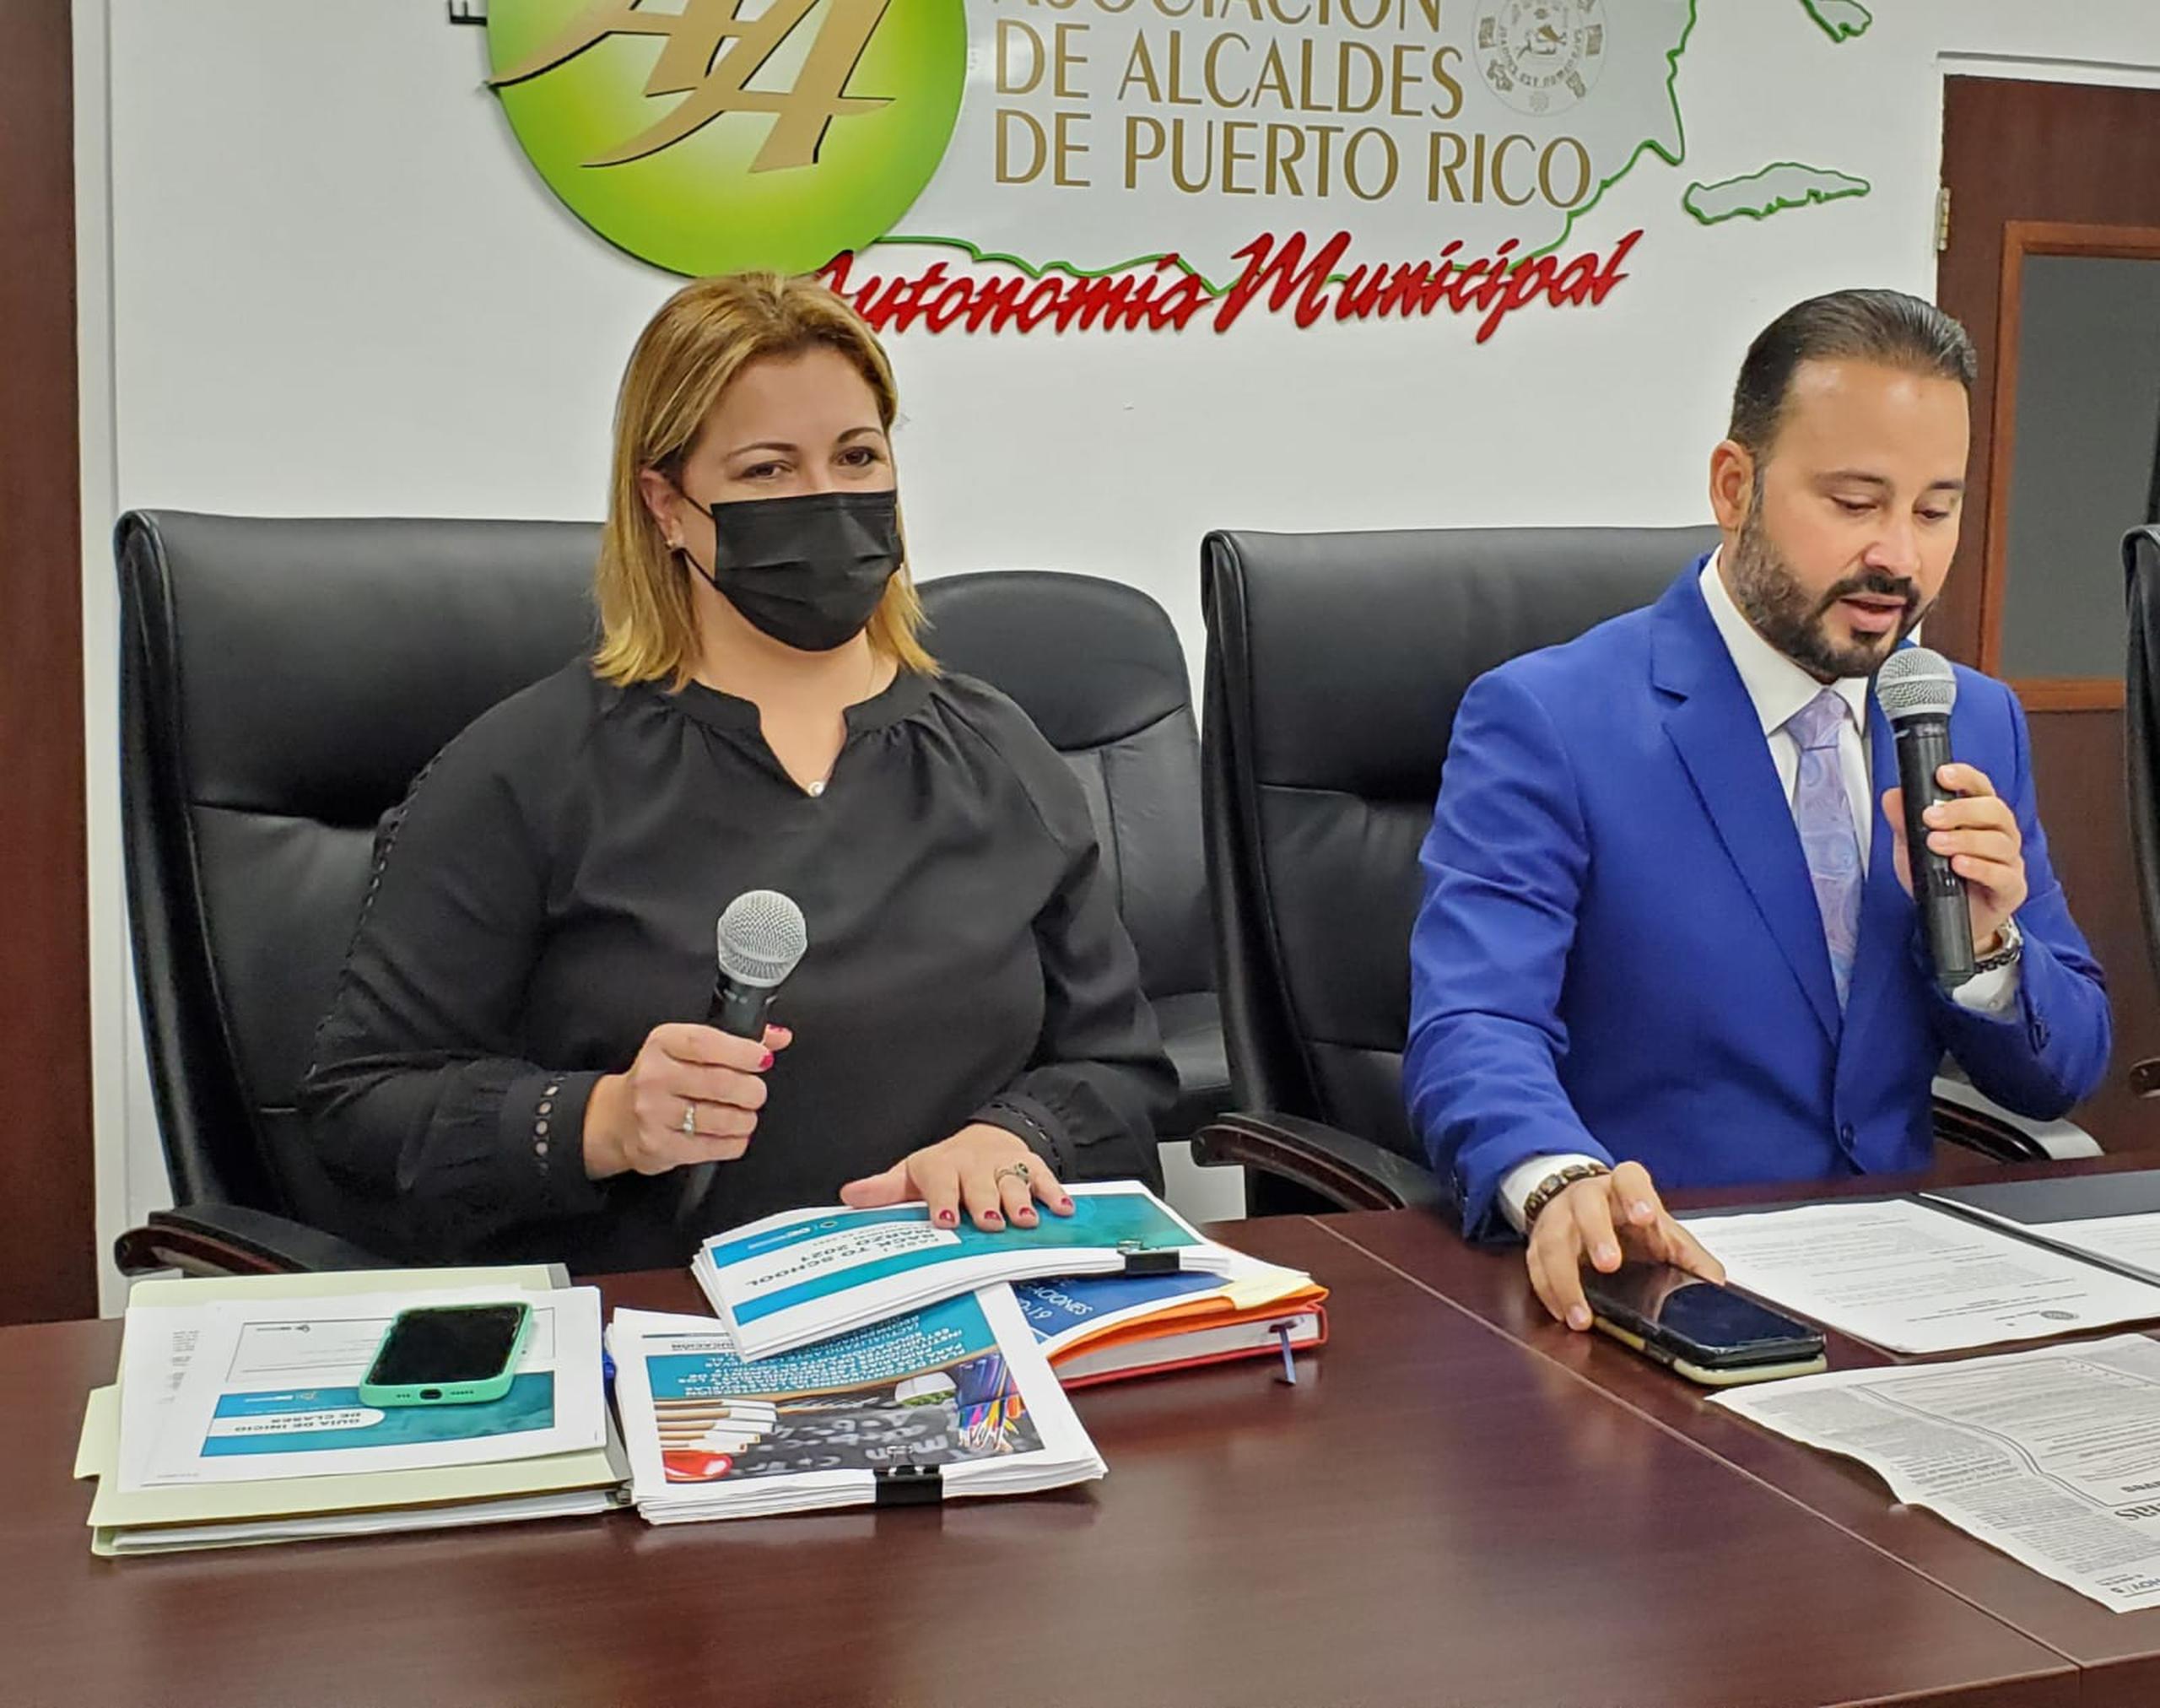 La designada secretaria de Educación, Elba Aponte Santos, le presenta a los miembros de la Asociación de Alcaldes el plan de reapertura de las escuelas.